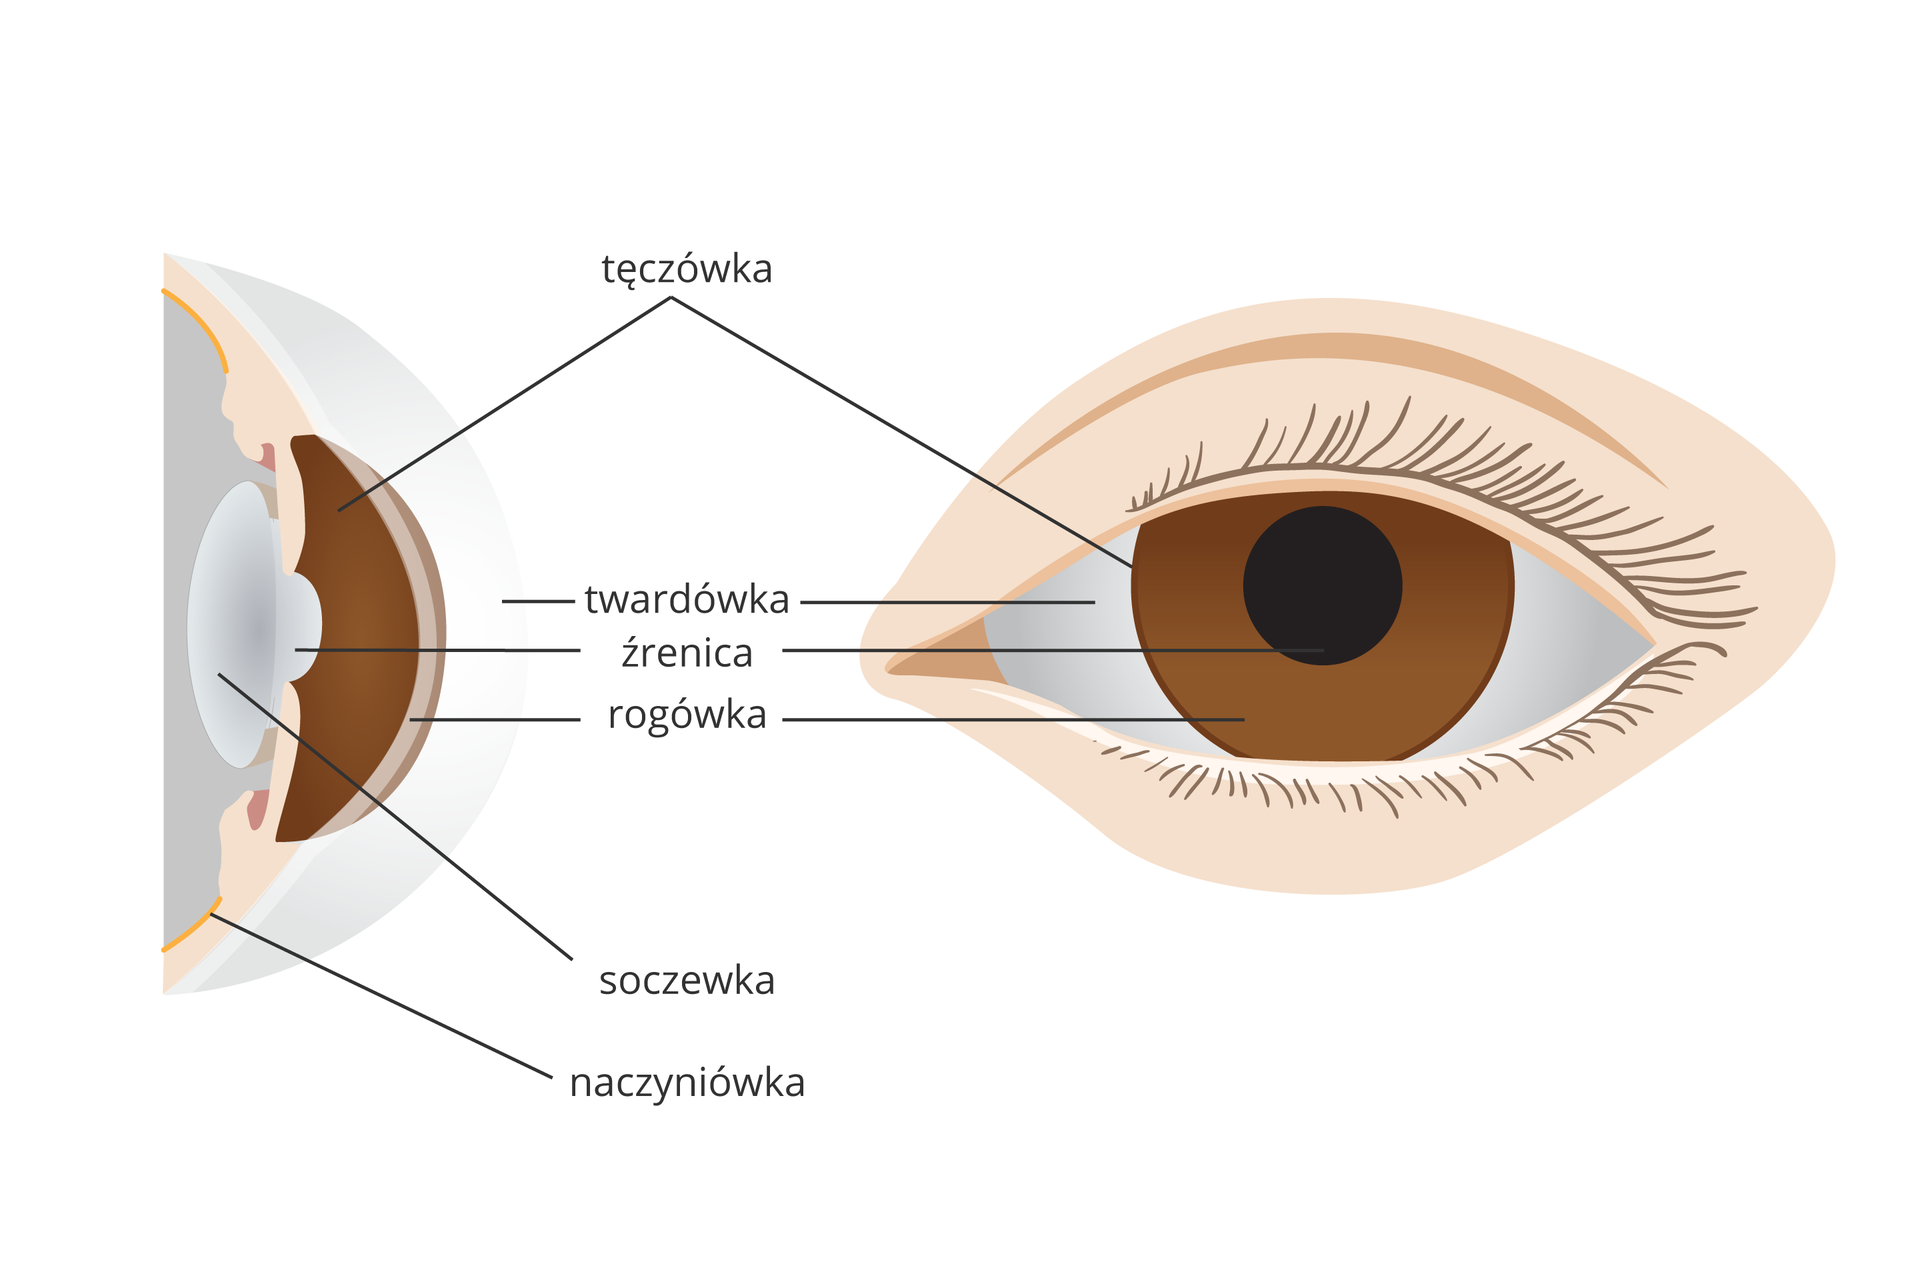 Ilustracja składa się z dwóch rysunków przedniej części oka. Z lewej przekrój pionowy, z prawej widok z przodu. Te same części przedstawione tym samym kolorem.